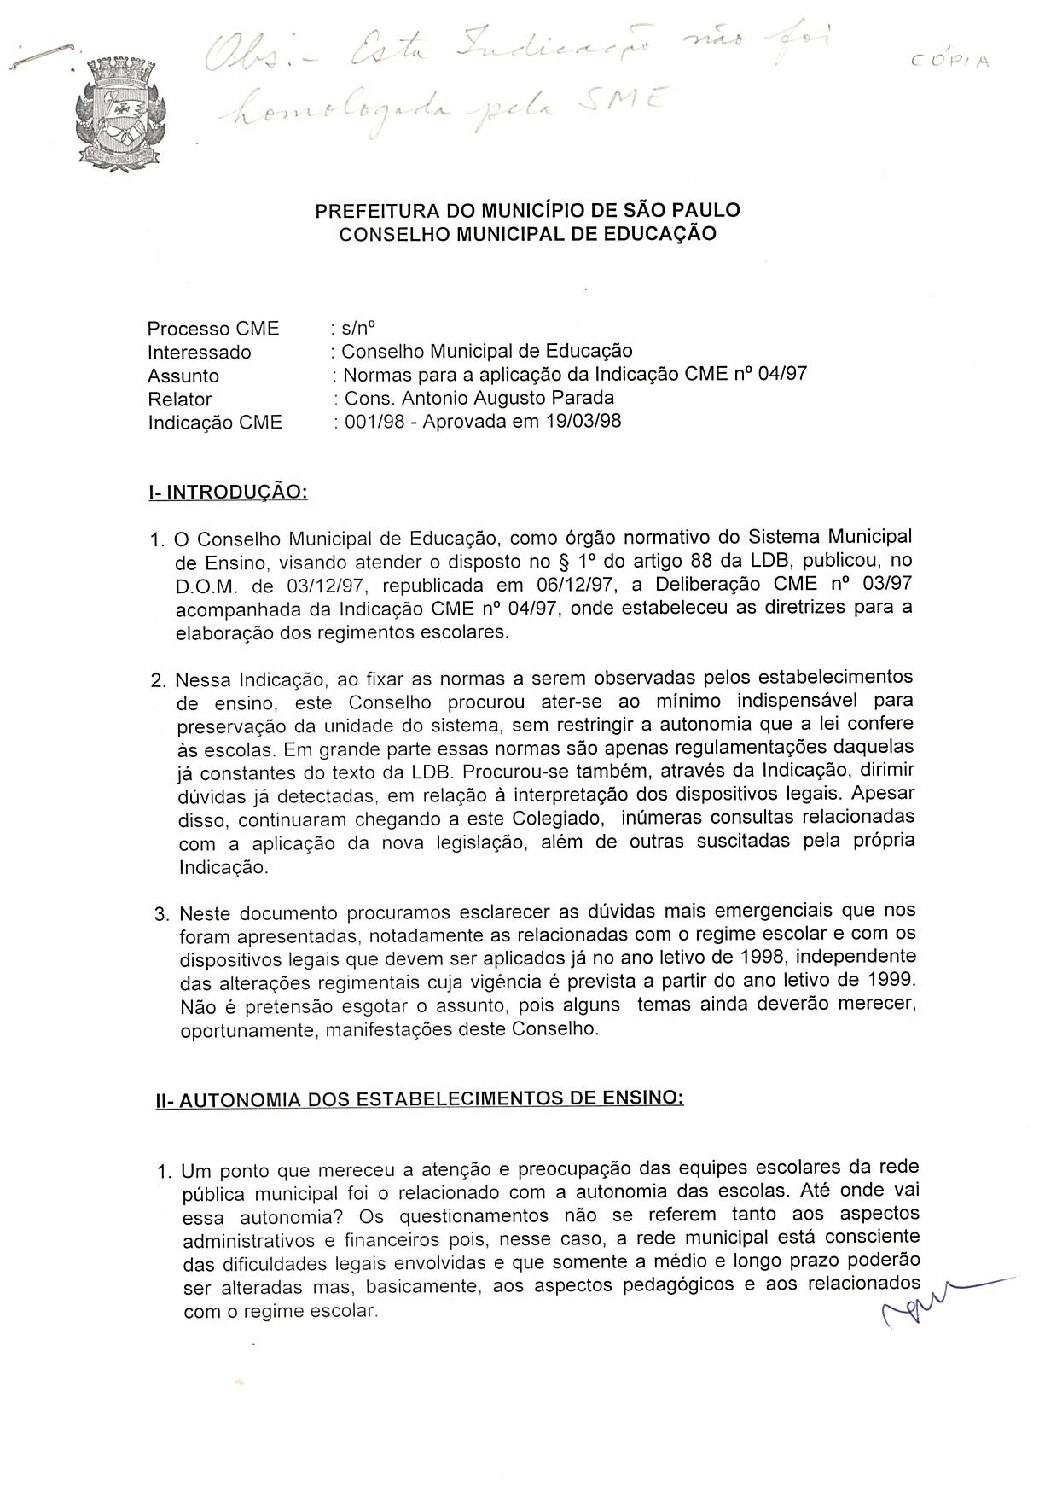 Indicação CME nº 01/1998 - Normas para a aplicação da Indicação CME nº 04/1997